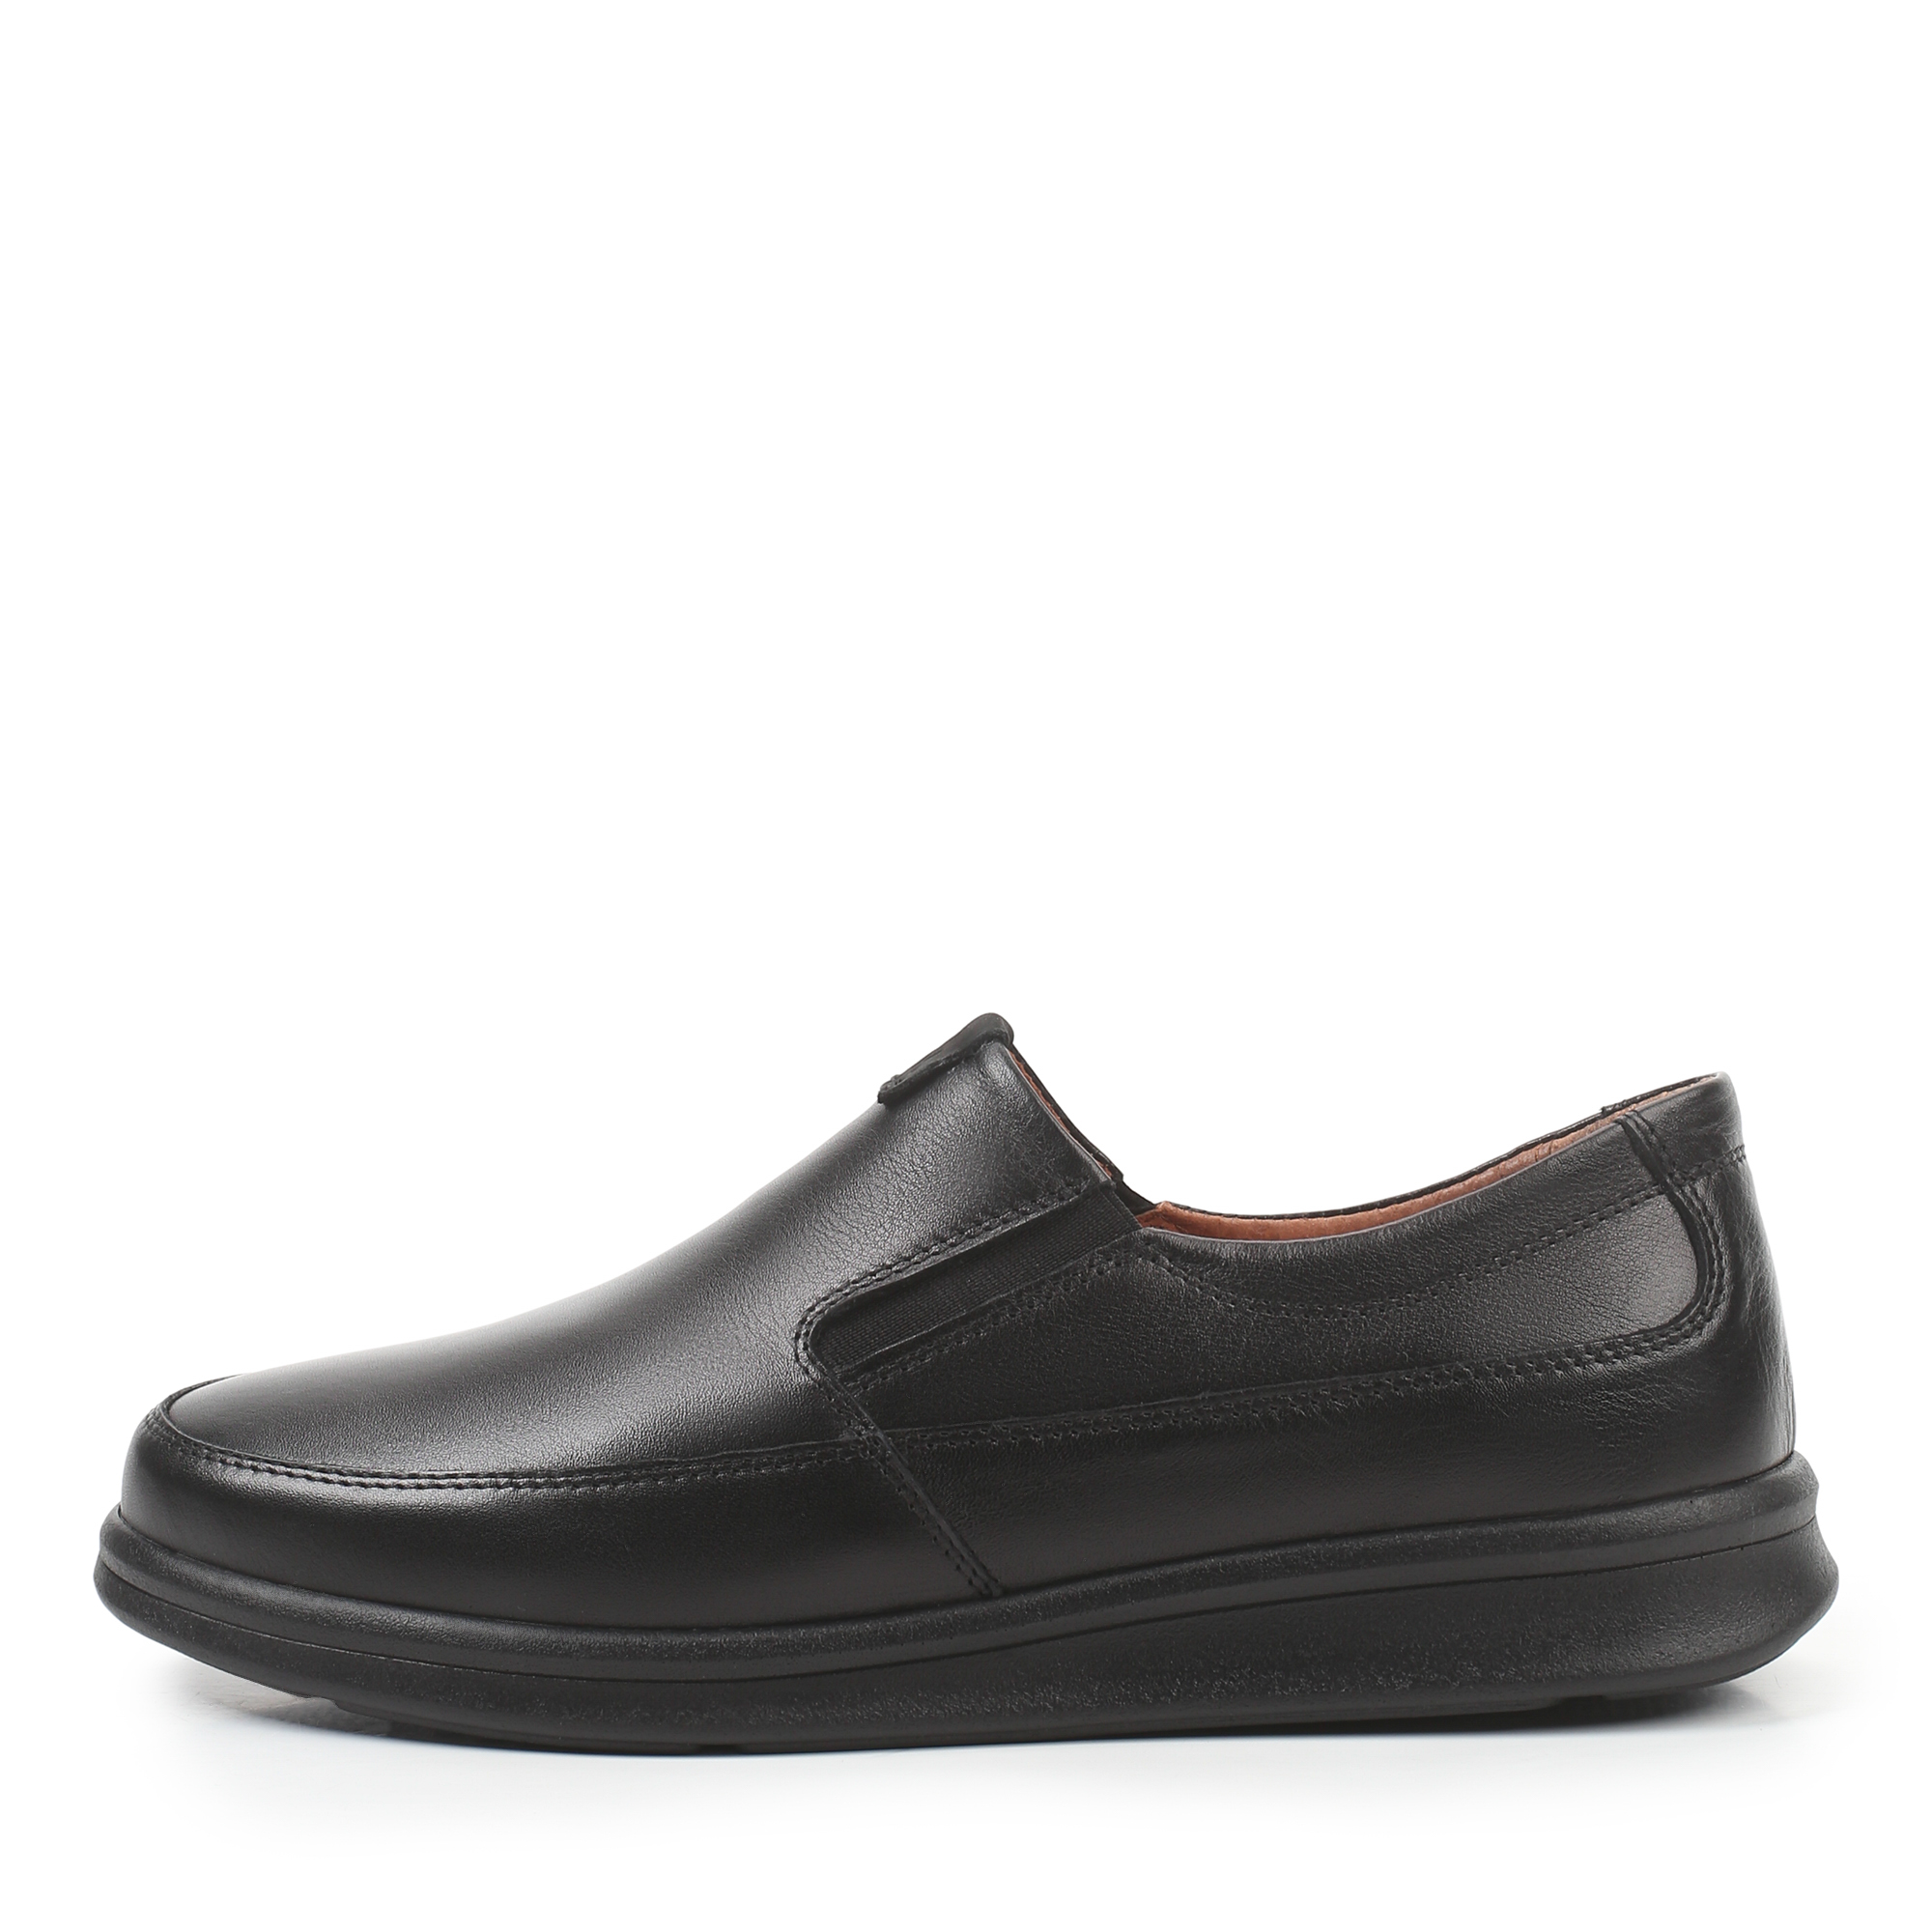 Туфли/полуботинки Thomas Munz 302-043A-1102, цвет черный, размер 42